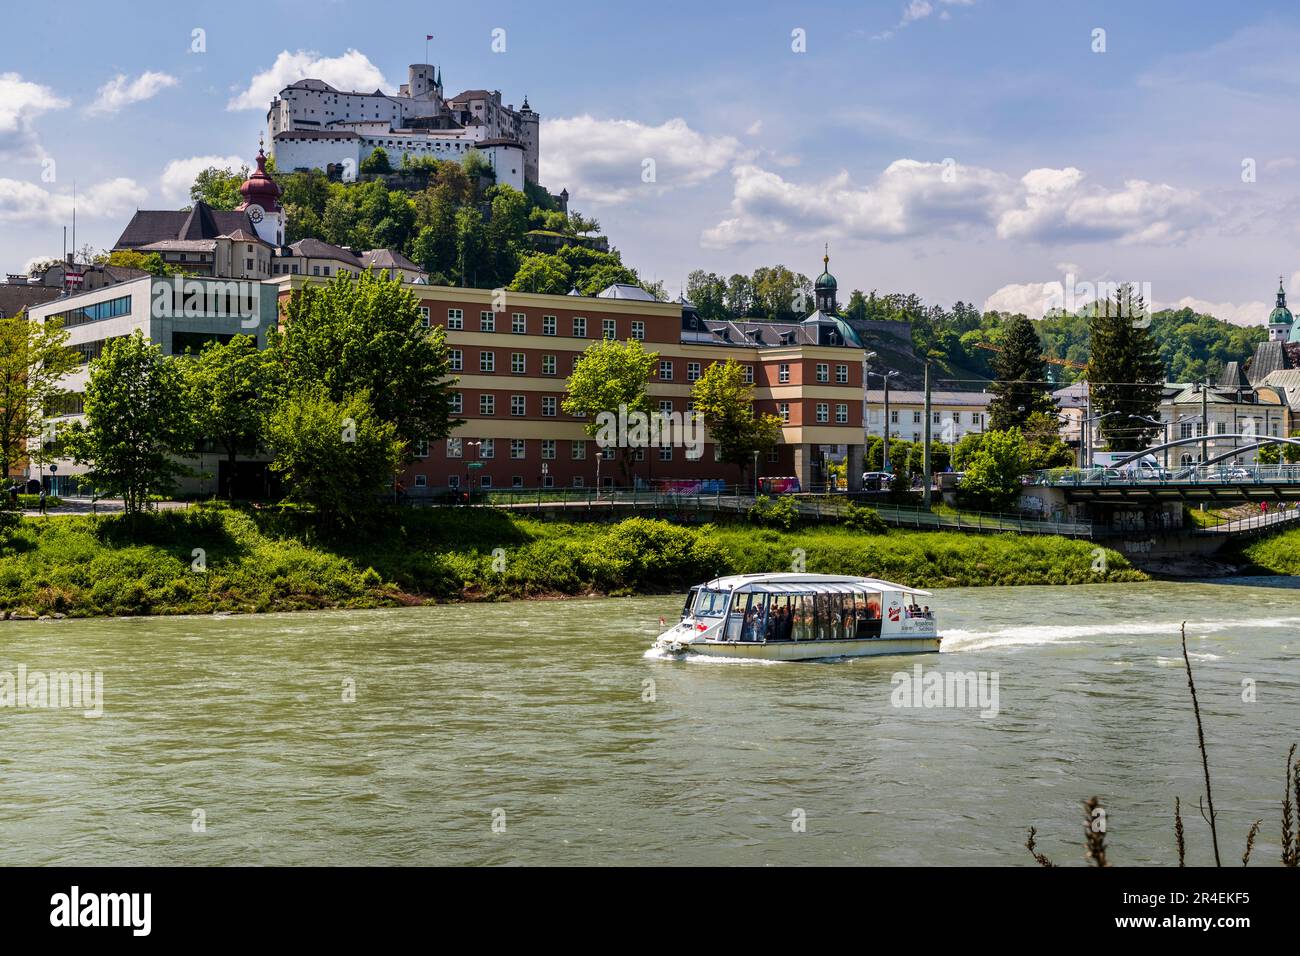 Vista del río Salzach con barco de excursión y fortaleza Hohensalzburg, en el edificio judicial frente y en el puente Nonnentaler derecho en Salzburgo, Austria Foto de stock